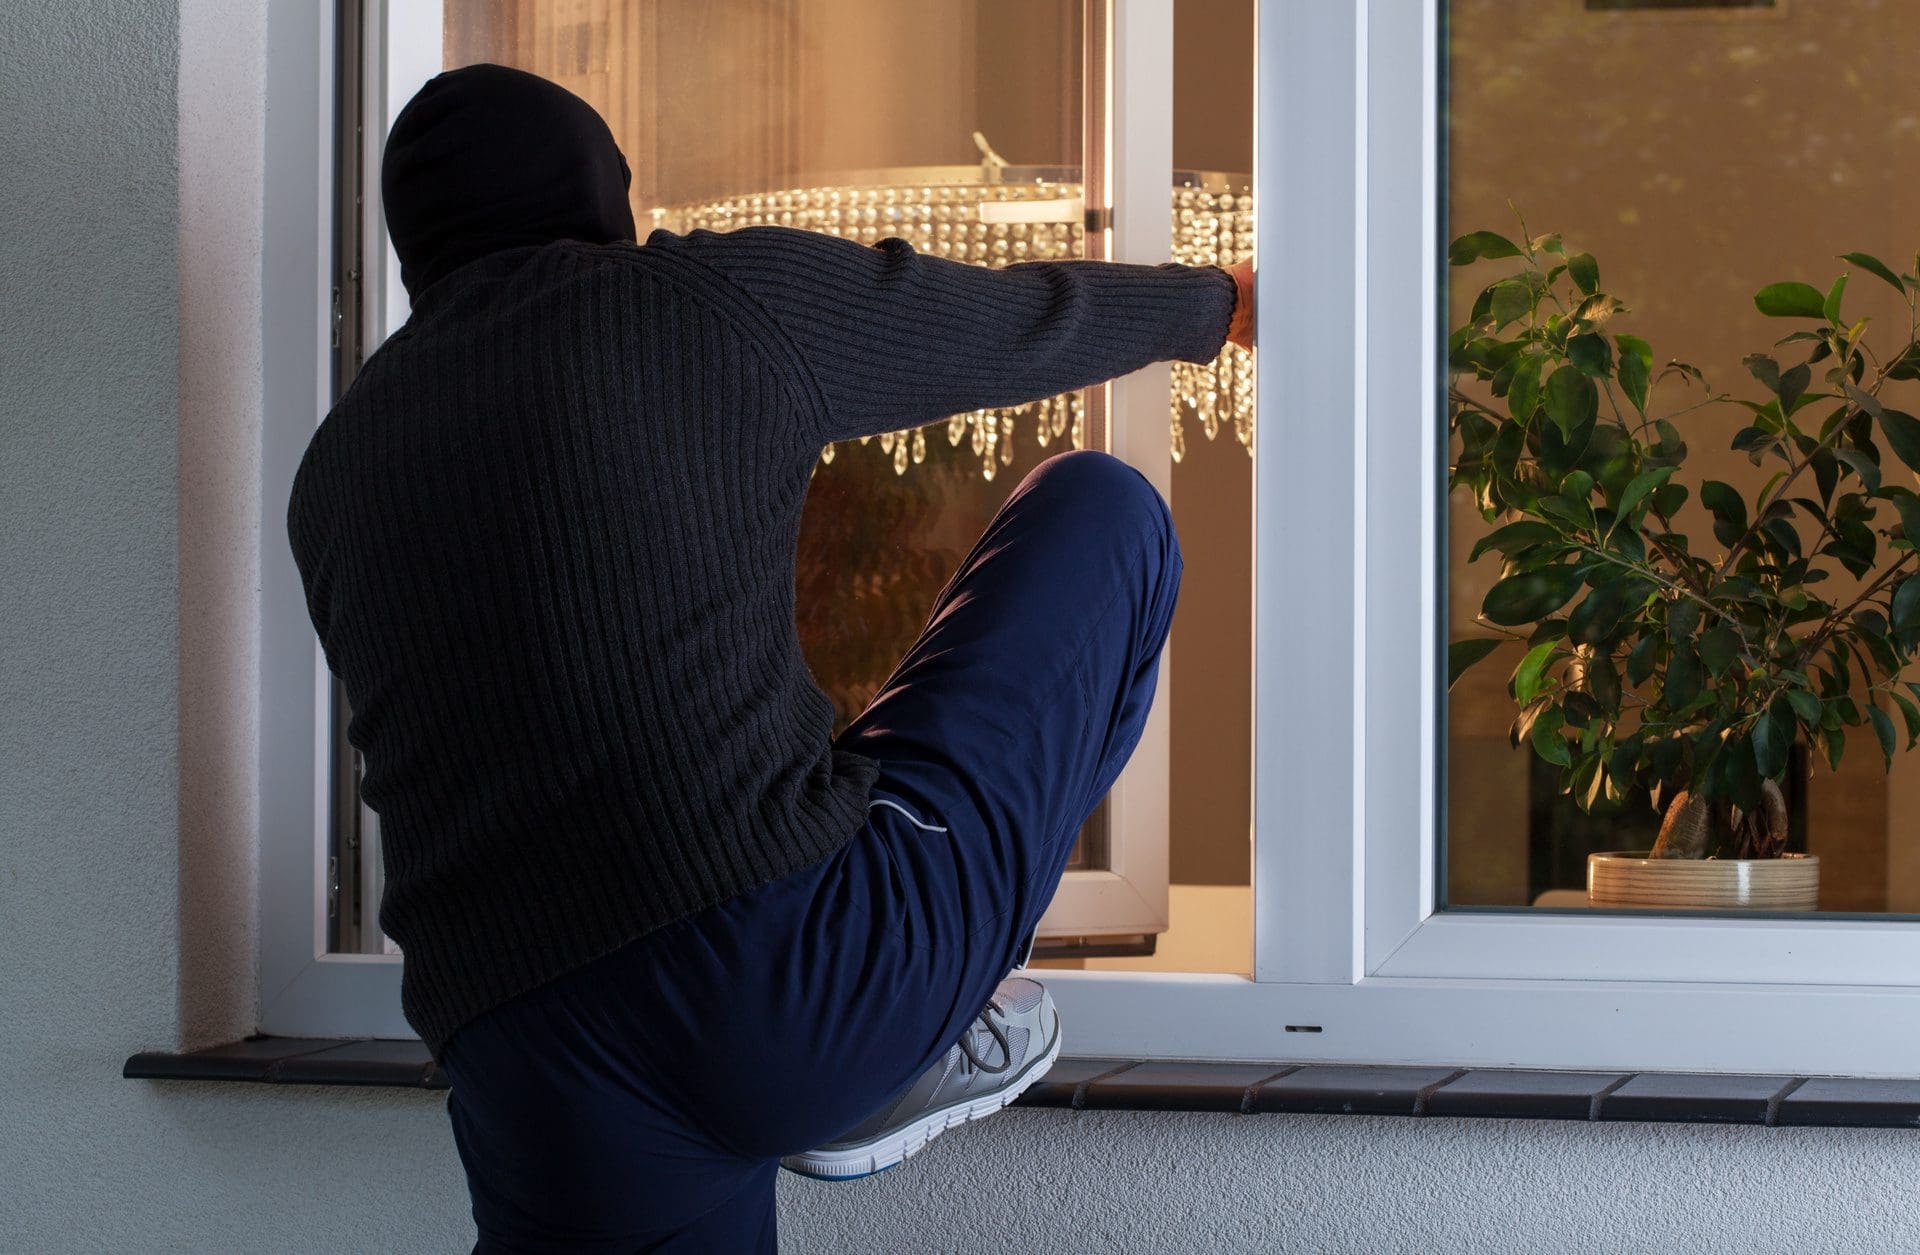 Einbruch durch offenes Fenster im Erdgeschoss - So leicht sollte man es Einbrechern nicht machen (© Photographee.eu / stock.adobe.com)